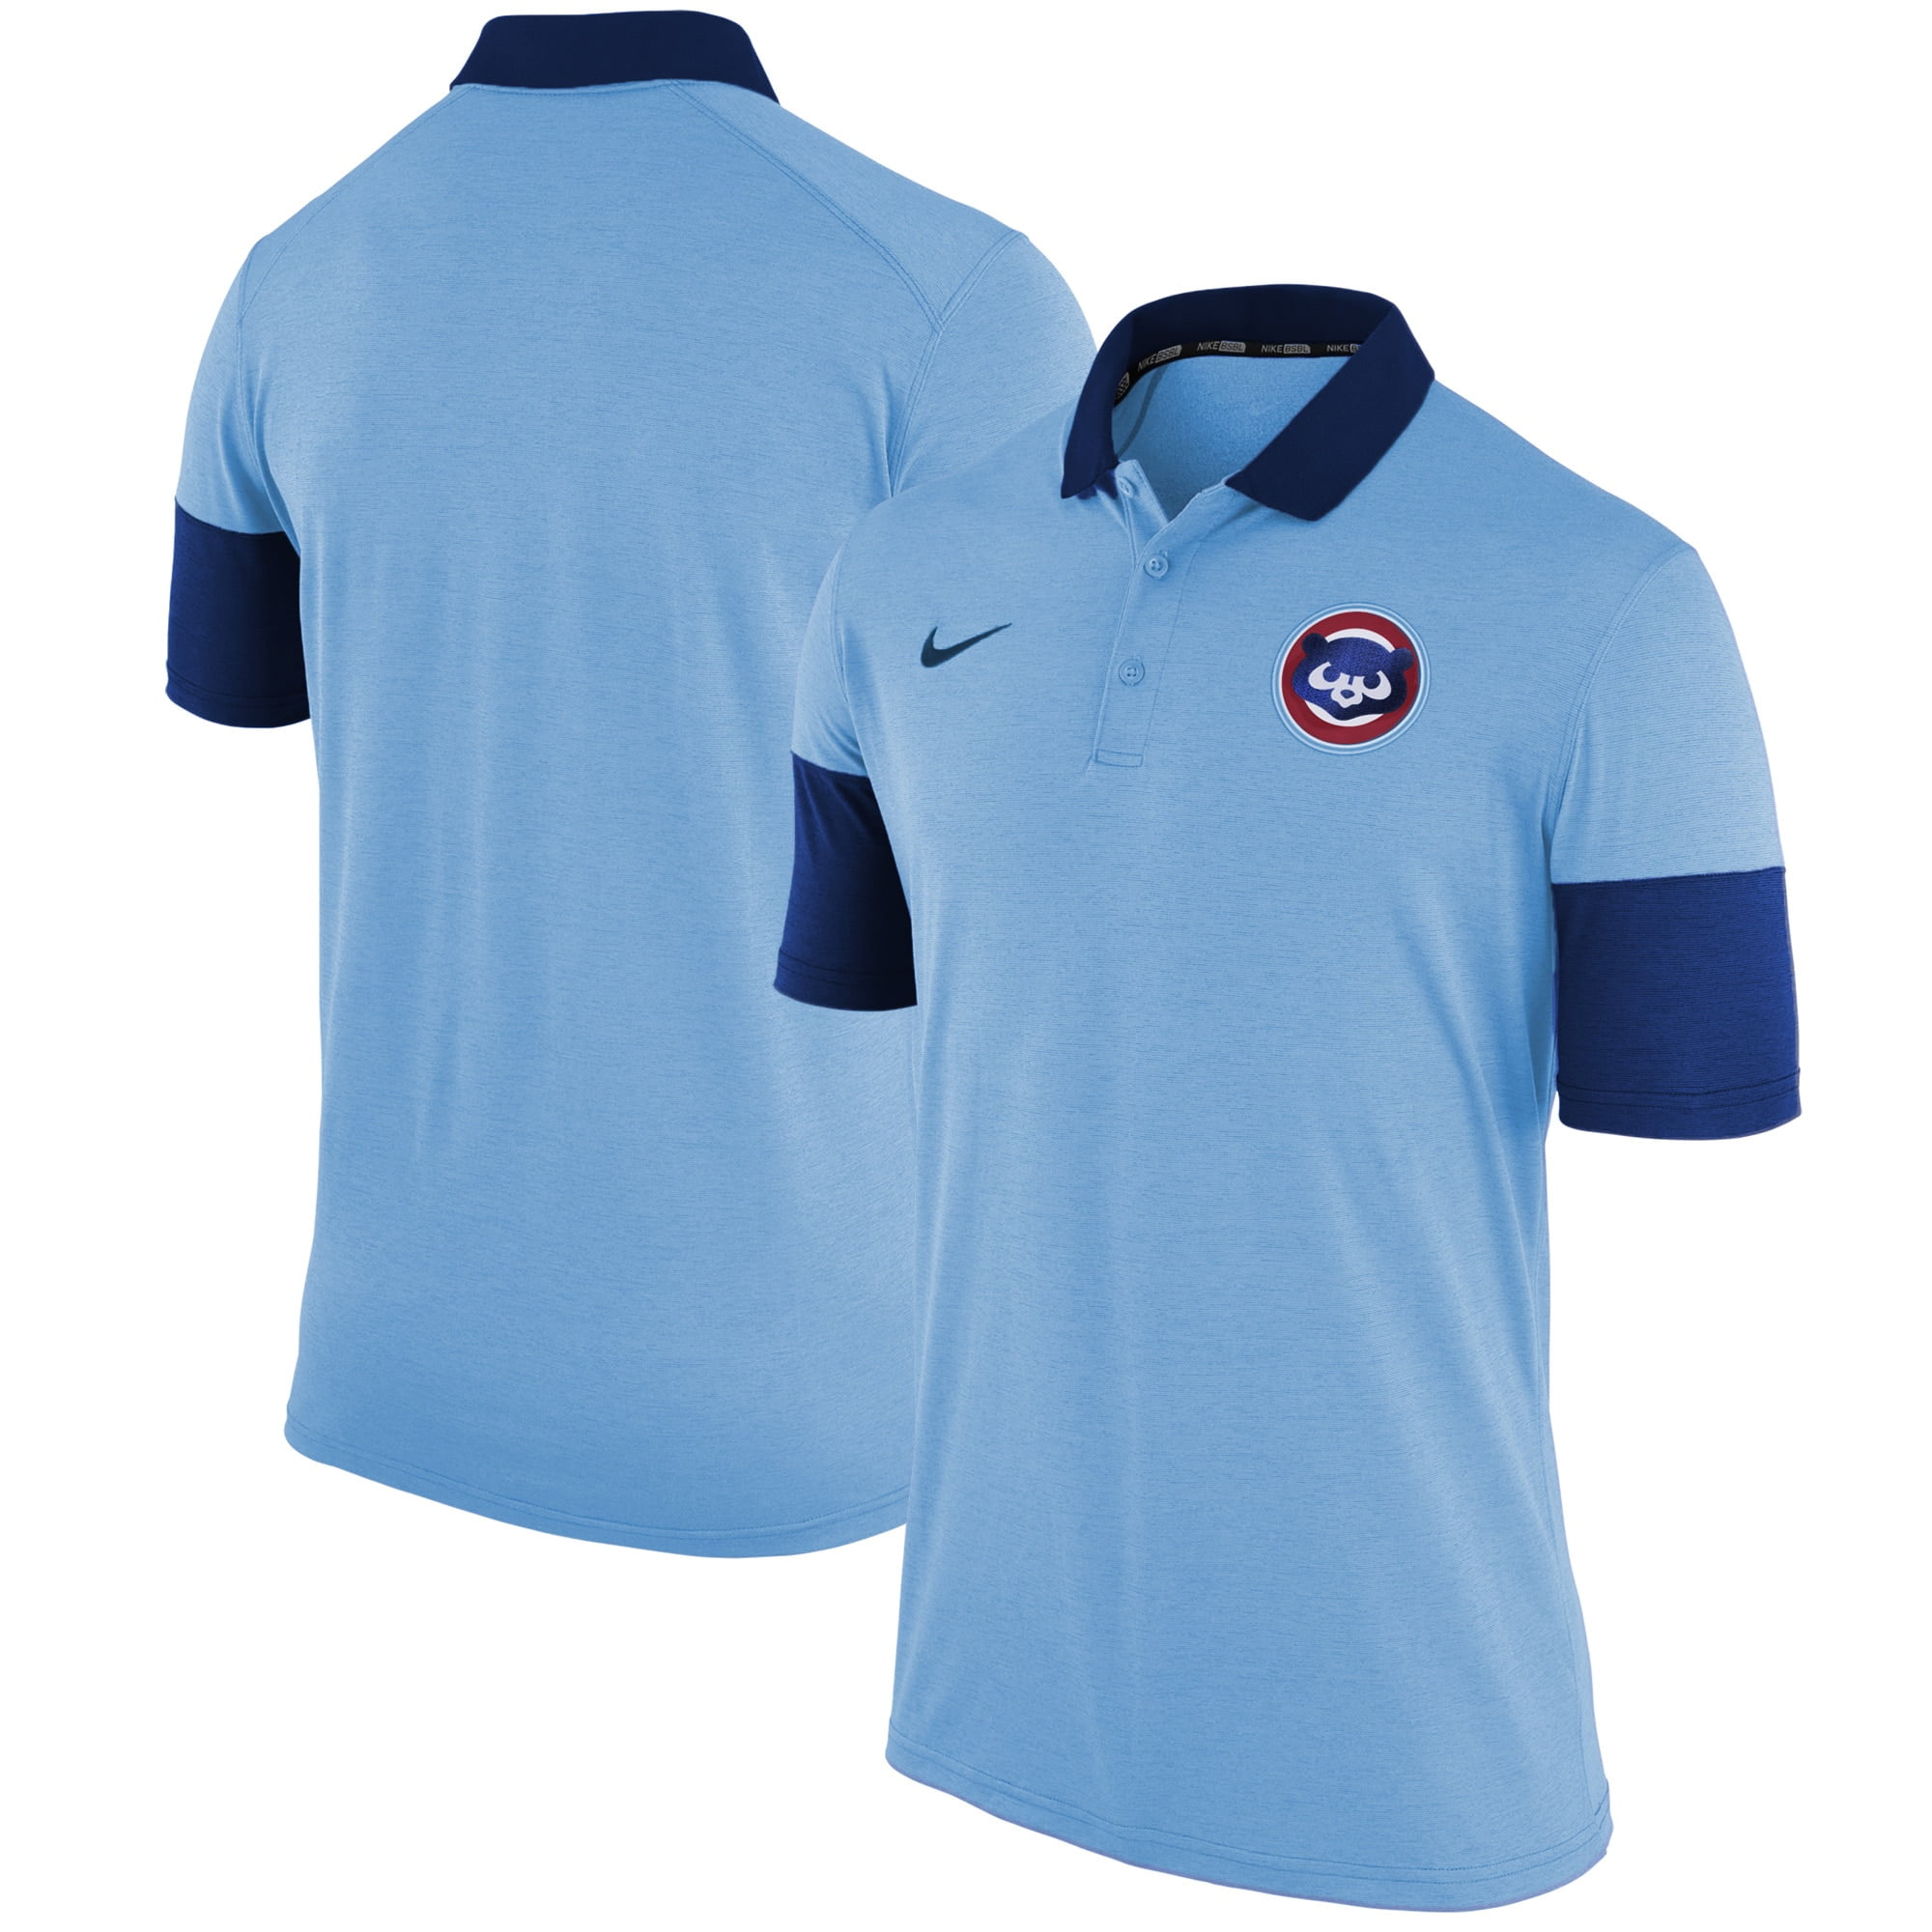 Chicago Cubs Nike Polo - Light Blue - Walmart.com - Walmart.com